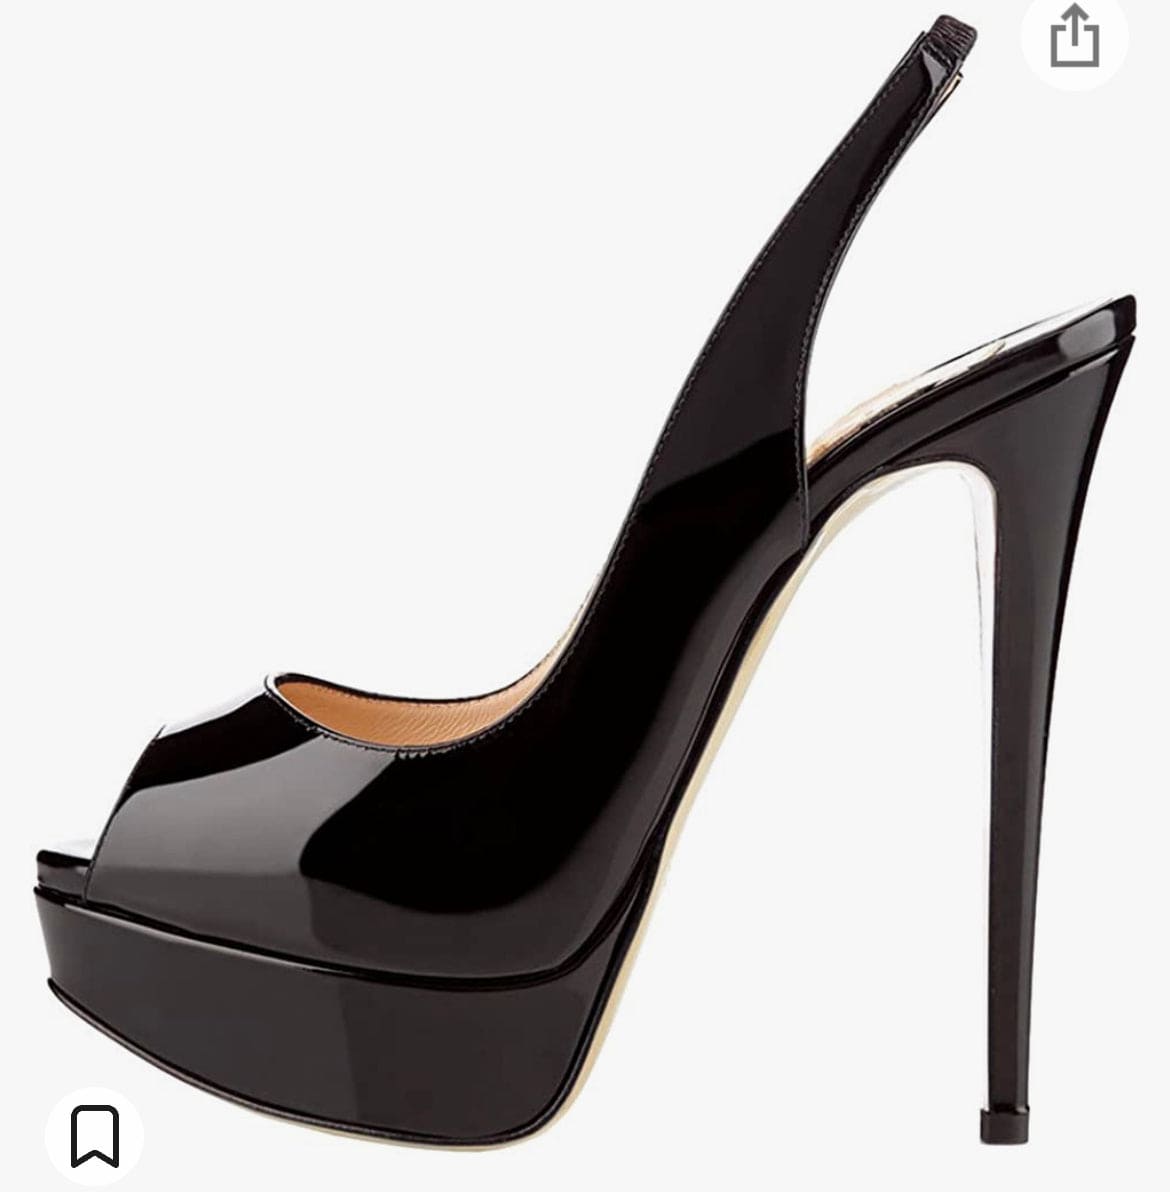 Black peaktoe sling back heels